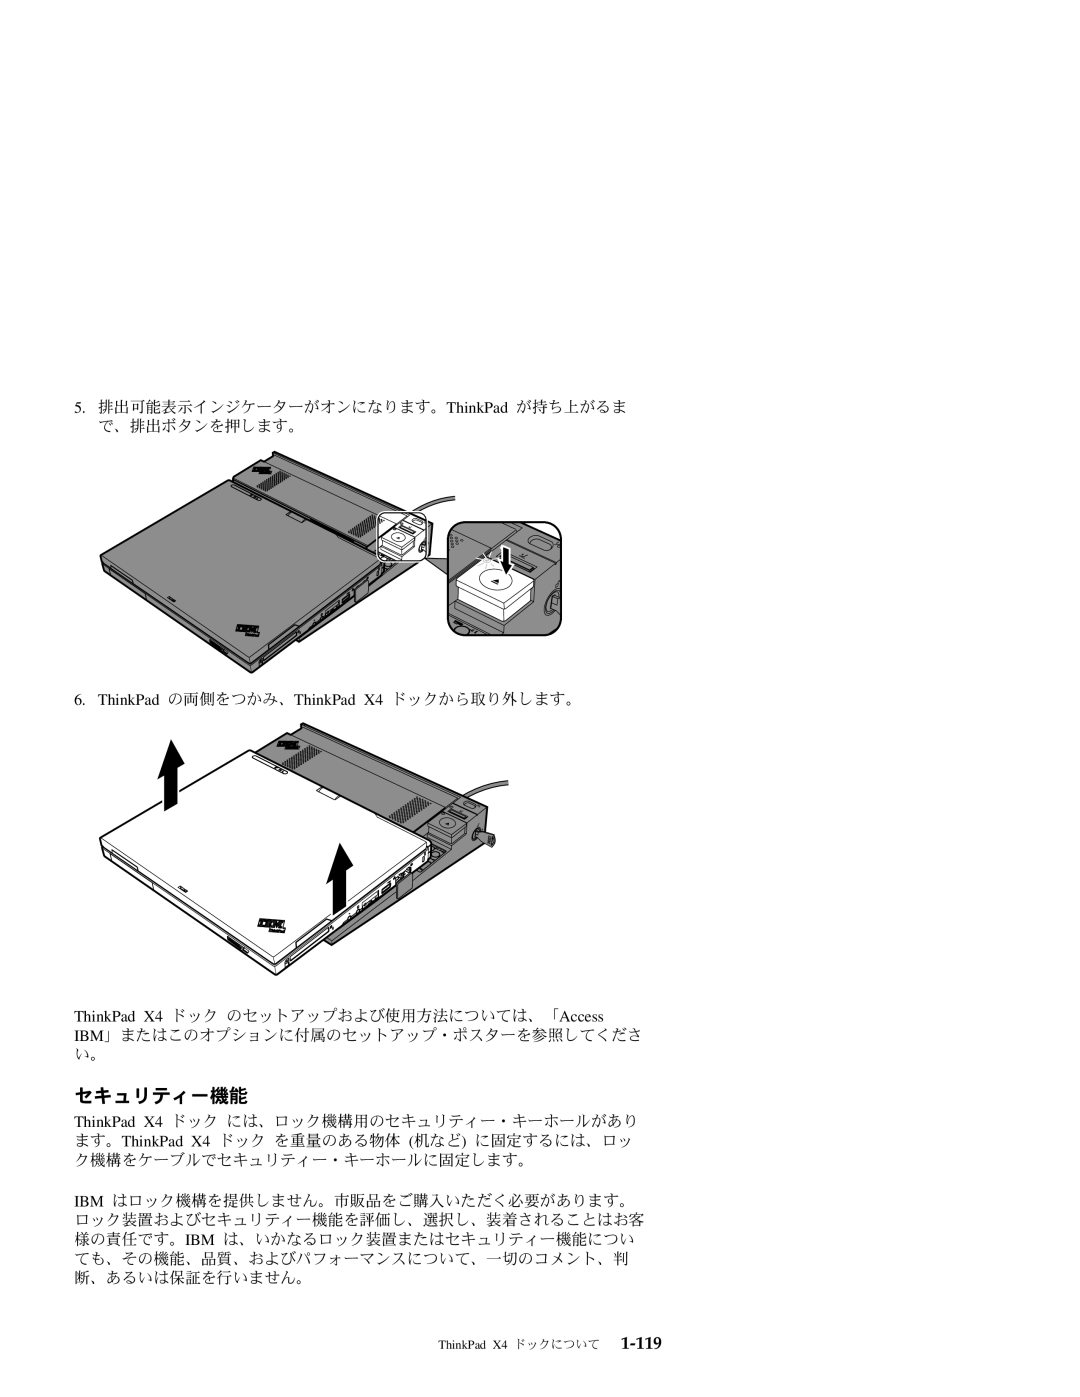 IBM manual セキュリティー機能, ThinkPad の両側をつかみ、ThinkPad X4 ドックから取り外します。 